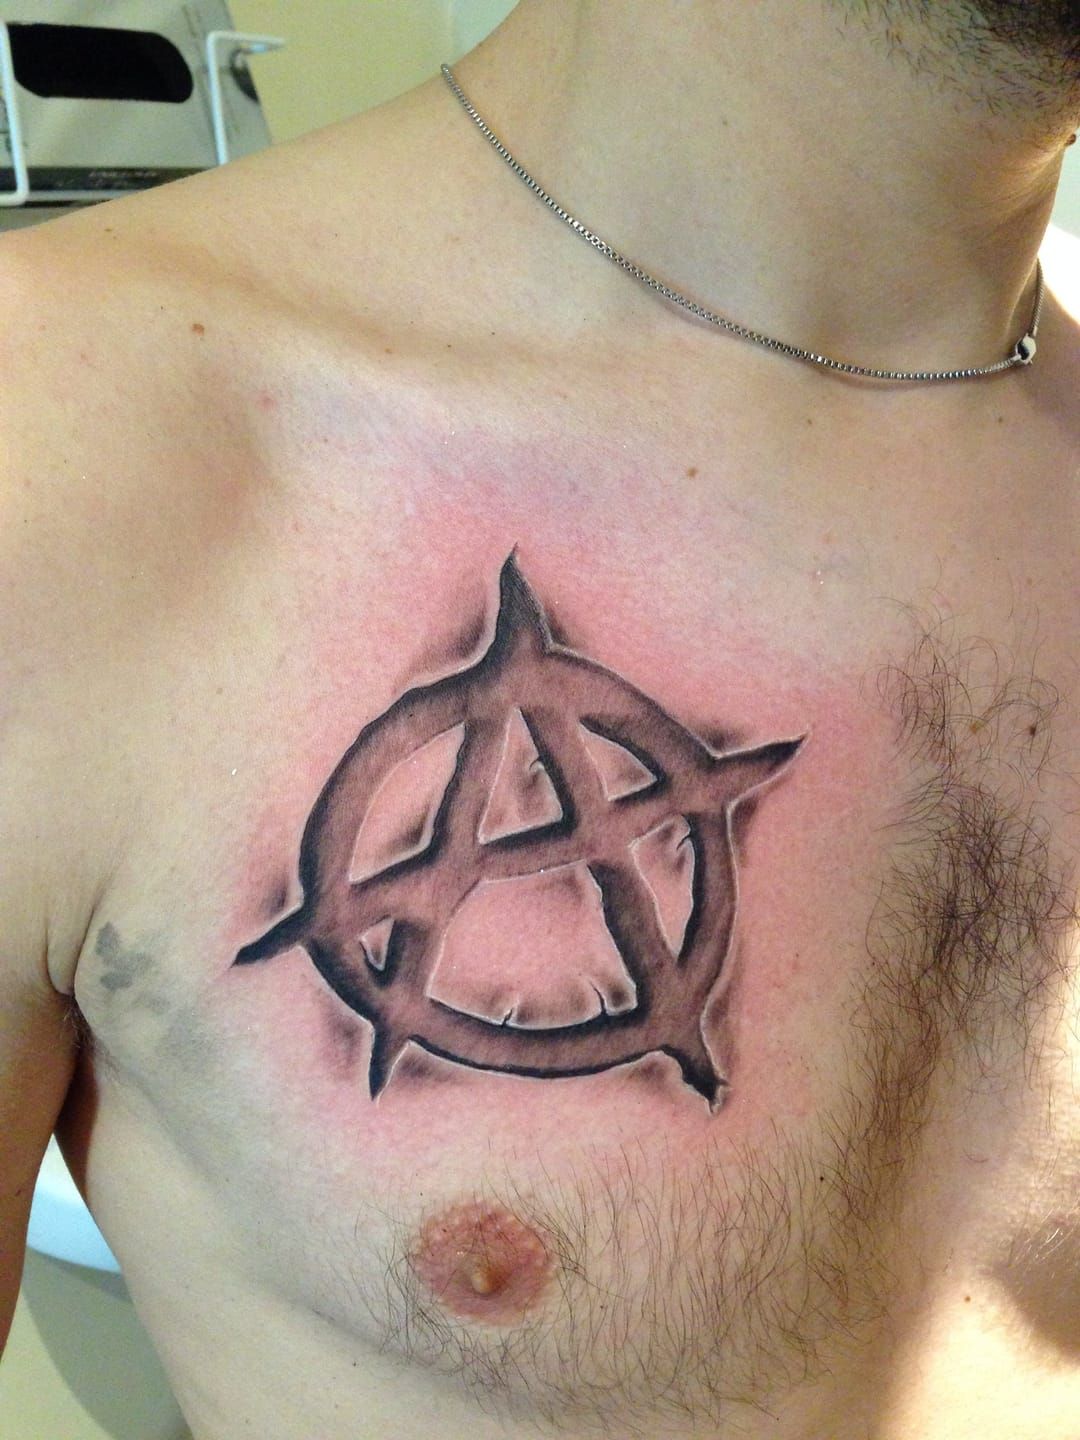 Significado del tatuaje con la S de Anarquía | BlendUp